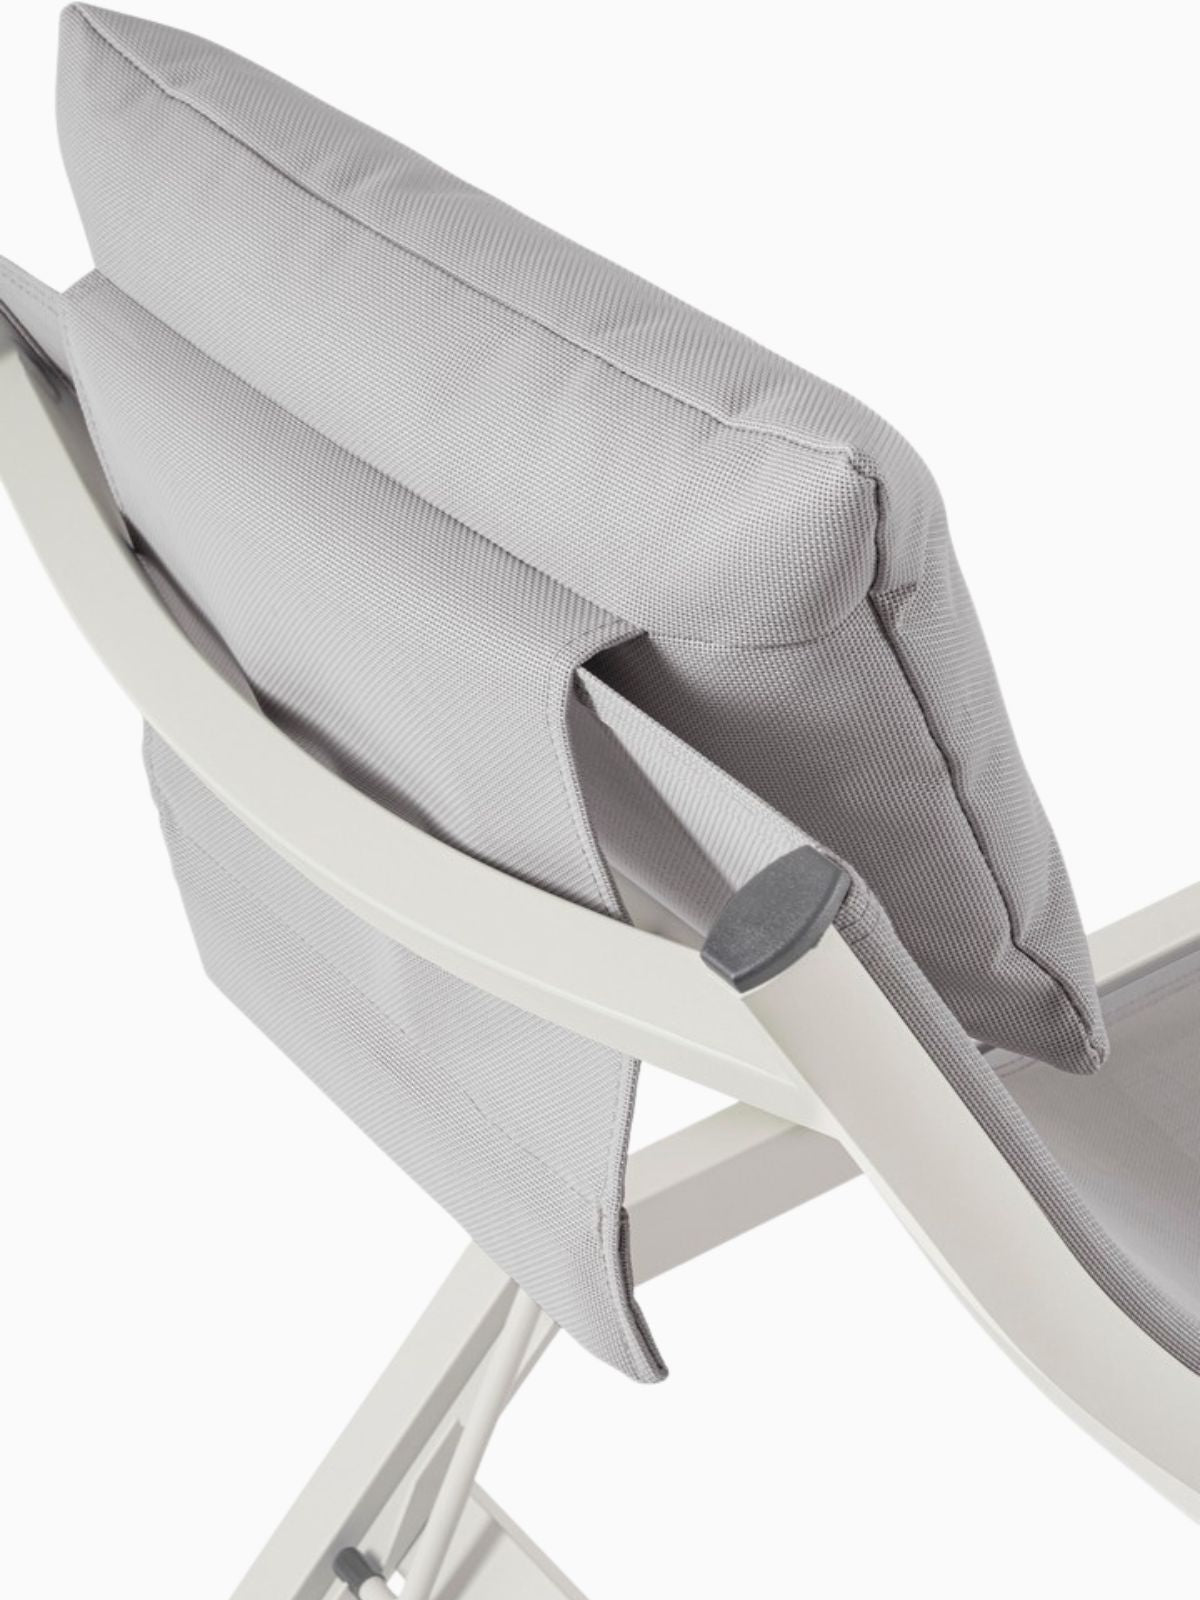 Chaise longue da esterno Krion in alluminio, colore grigio chiaro-3